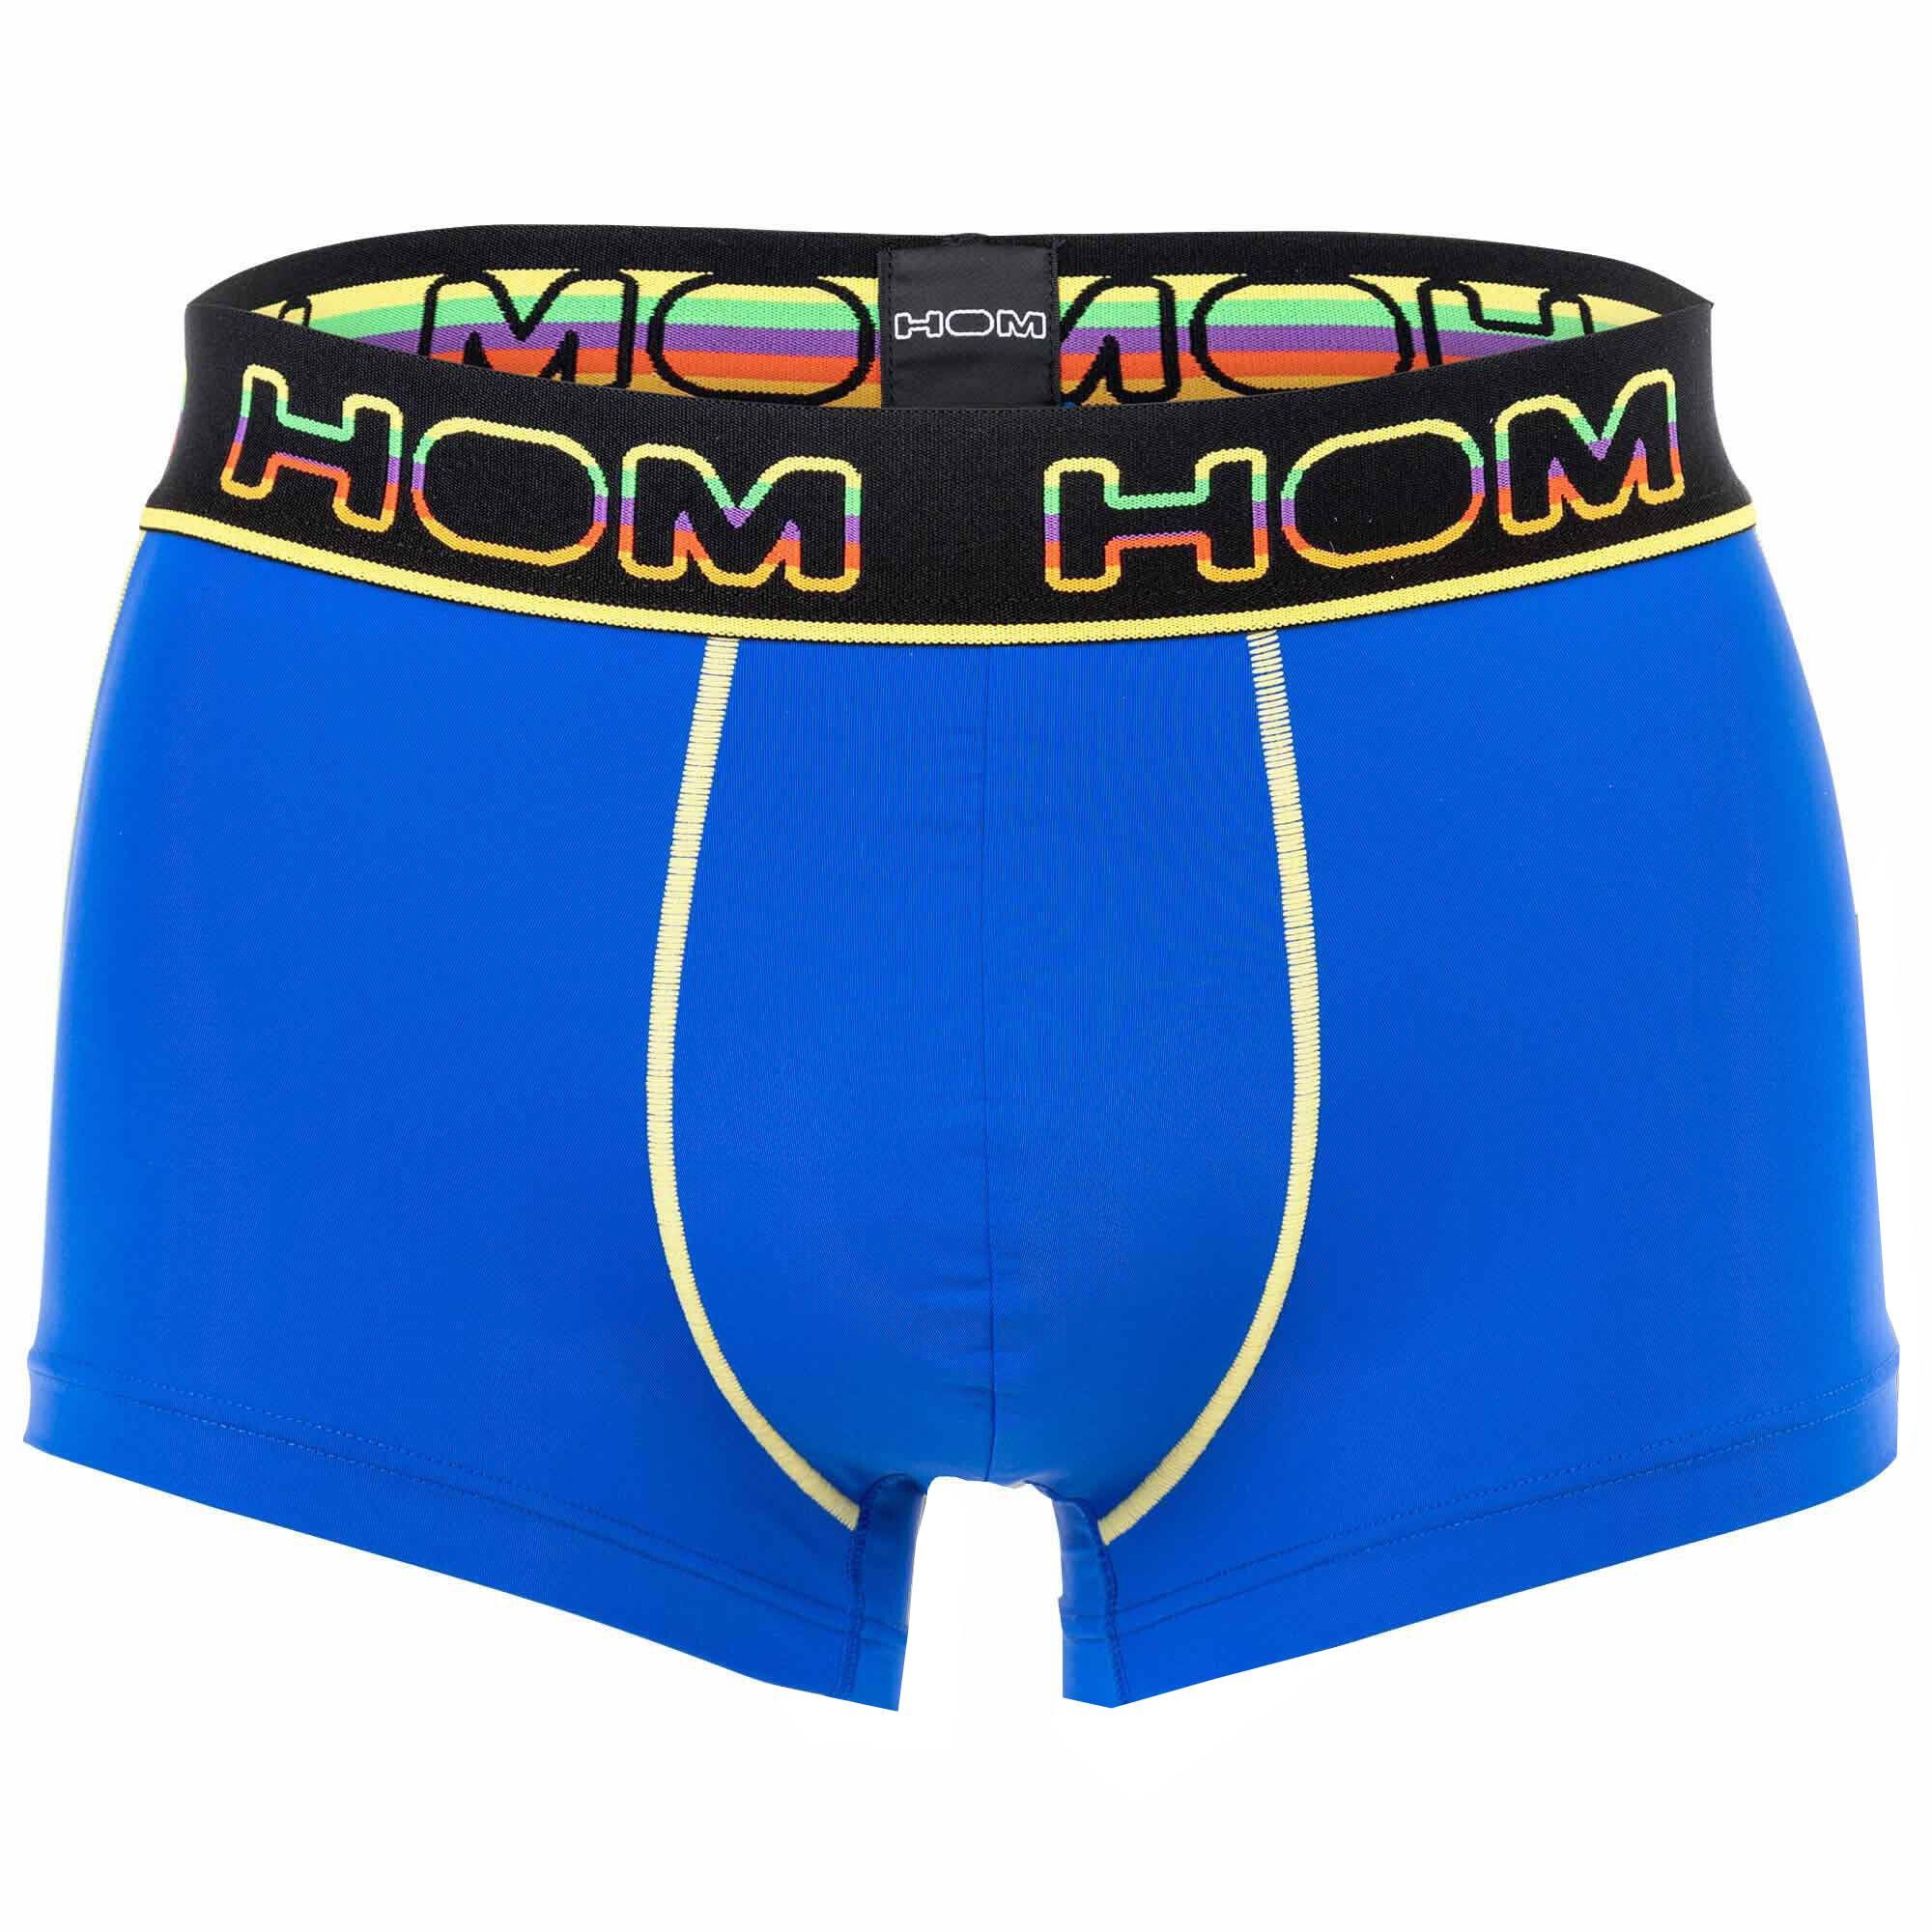 Hom Boxer Herren Trunks - Rainbow Sport, Pants, Unterwäsche Blau